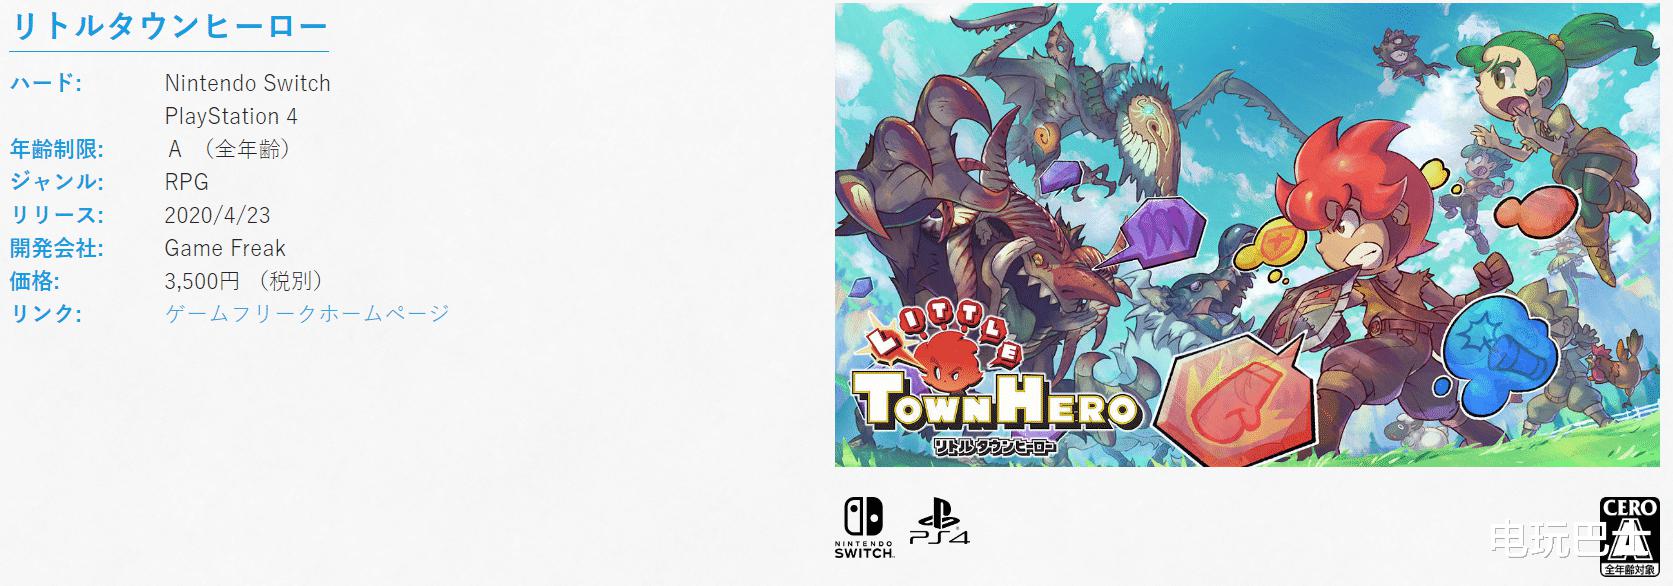 《小镇英雄》即将于4月23日登陆索尼PS4主机